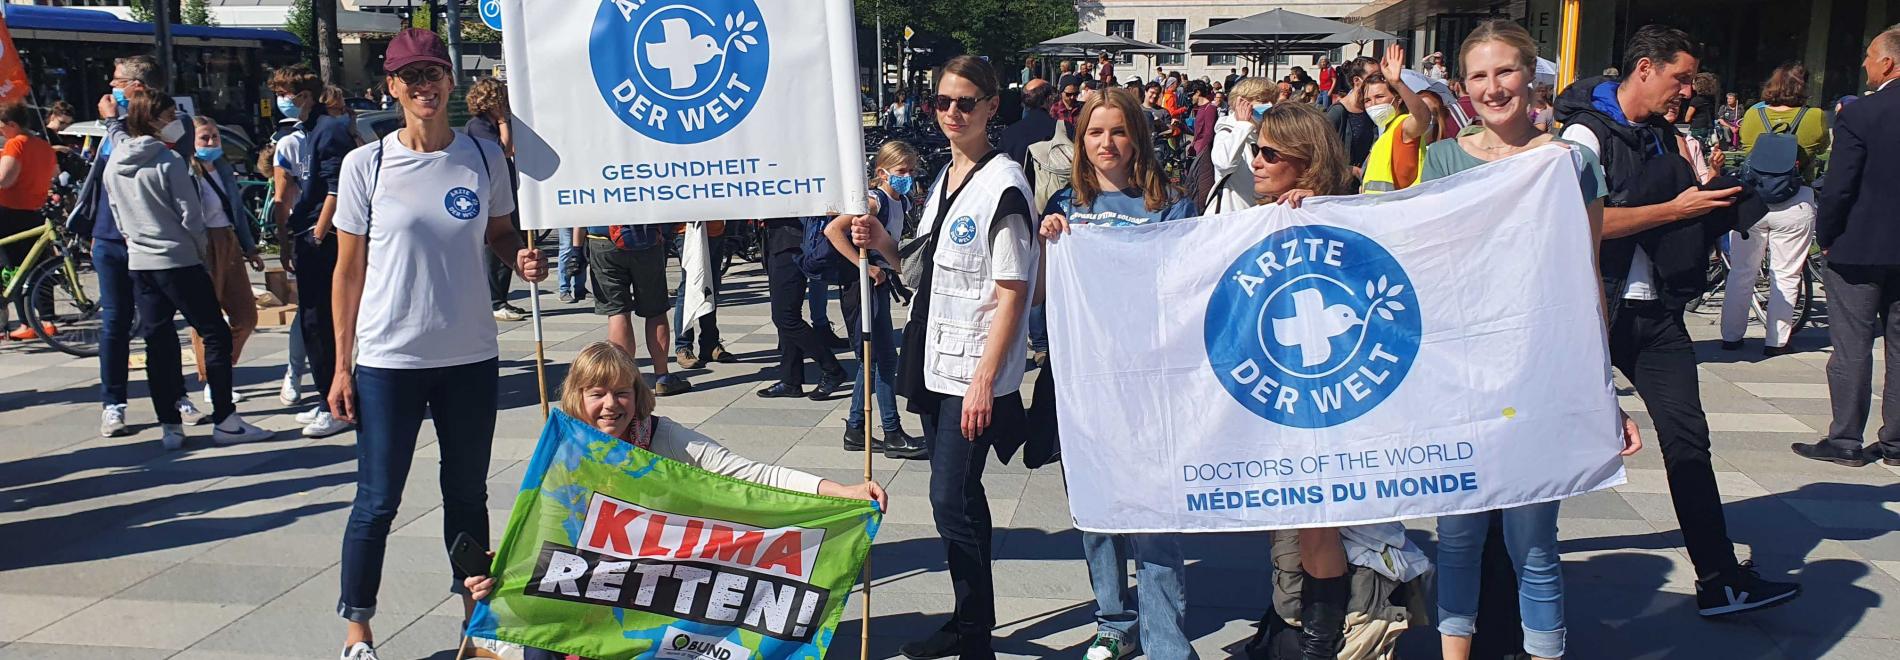 Demonstration für Klimaschutz in München 